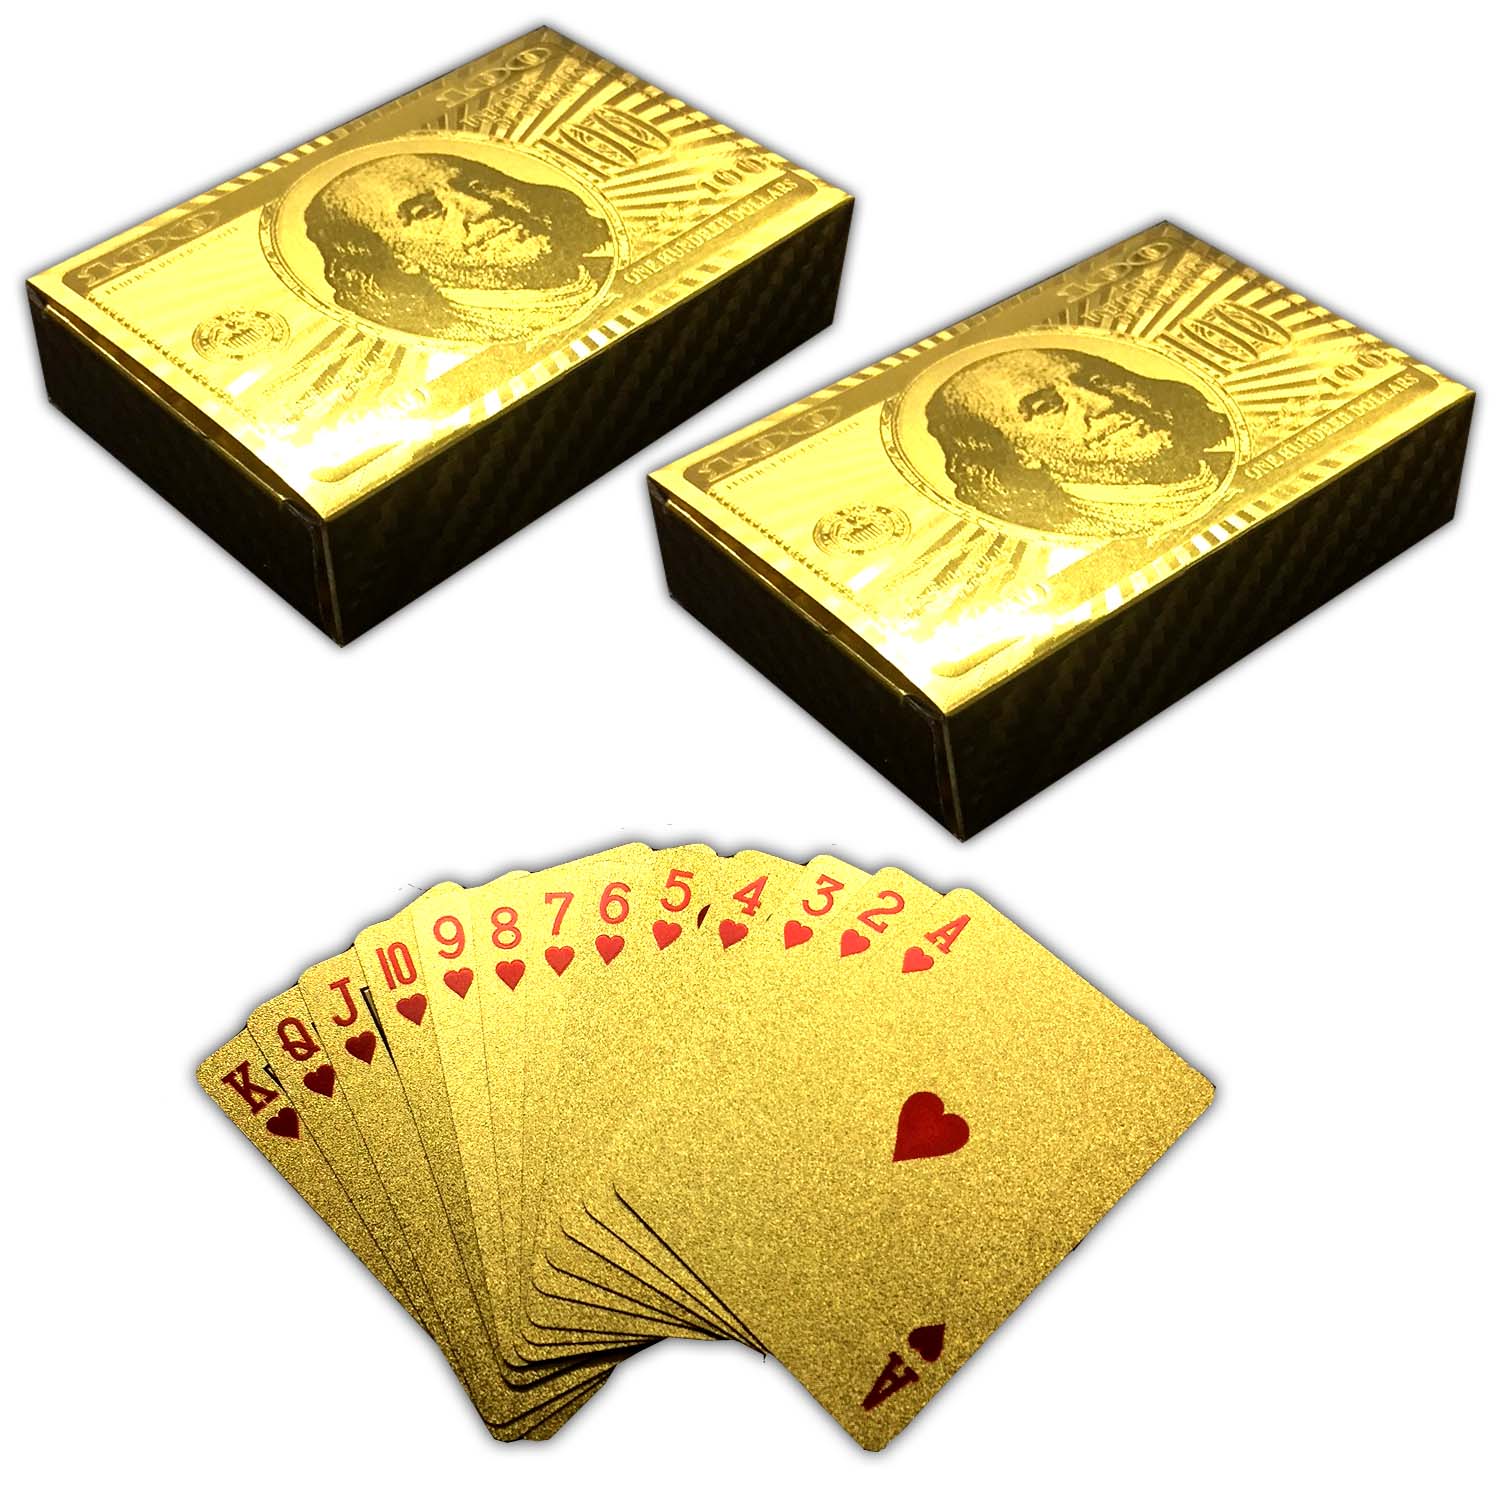 2x 54 Plastik Spielkarten mit Goldüberzug 100$ Design | 2er_Karten_gold